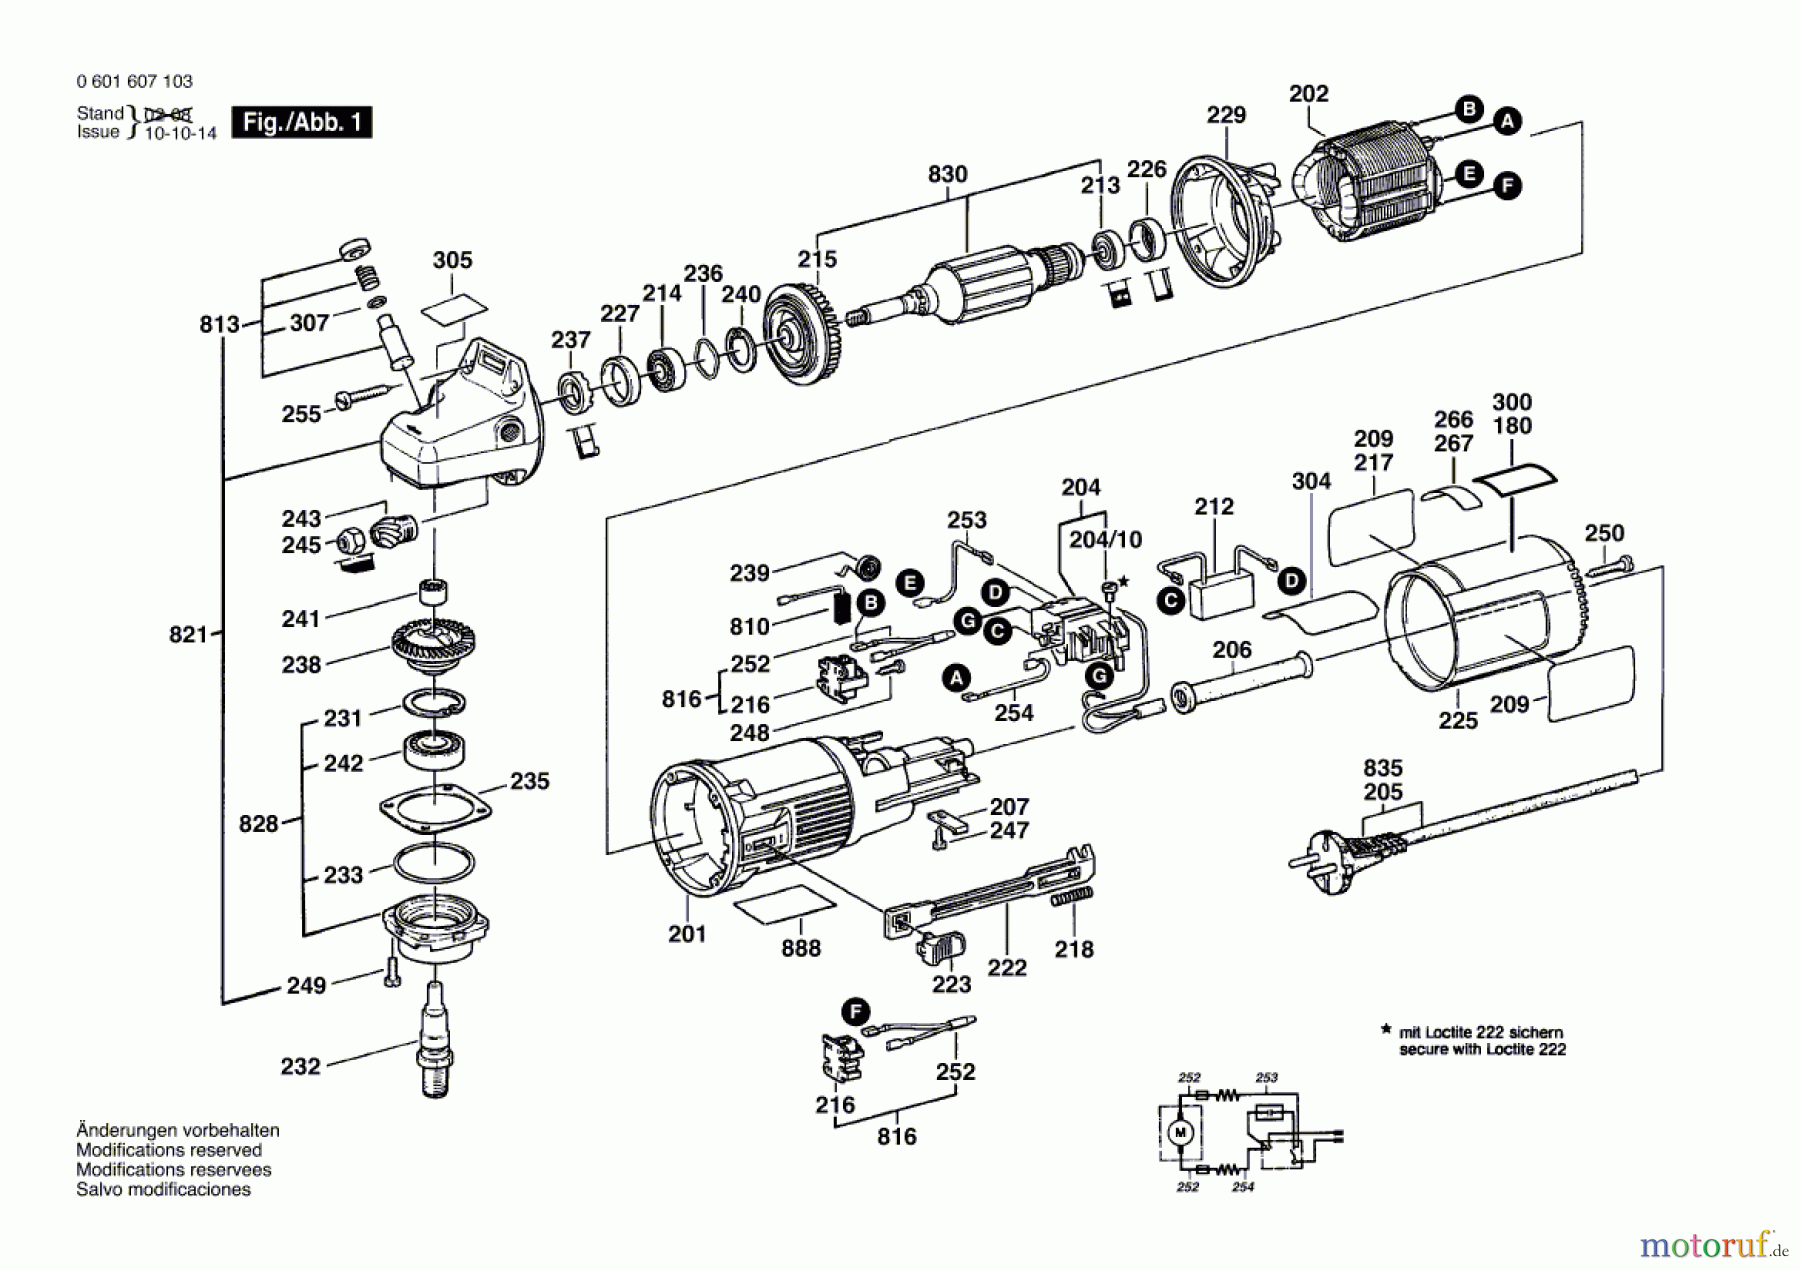  Bosch Werkzeug Universalfräse GUF 4-22 A Seite 1